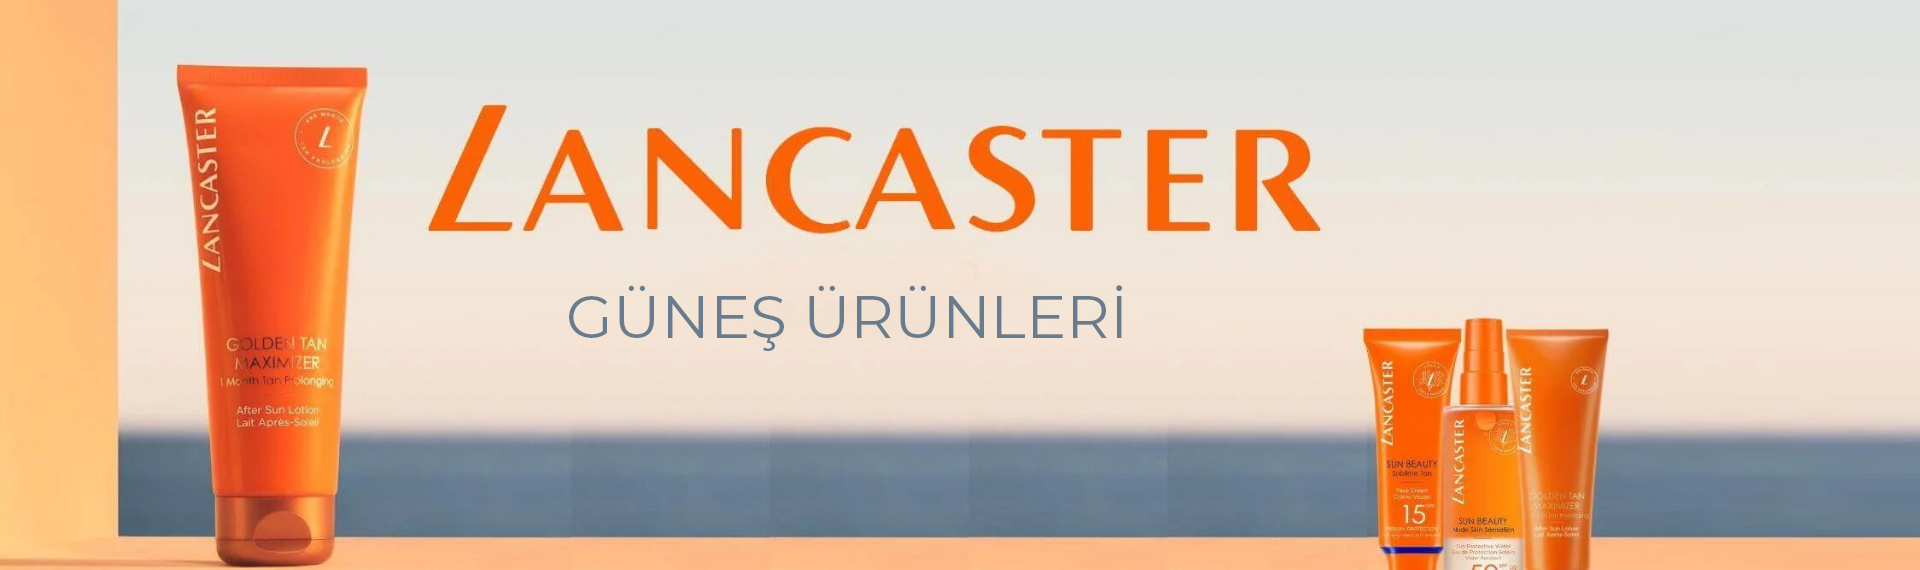 Lancaster Güneş Bakım Ürünleri ile Yaza Hazırsın!